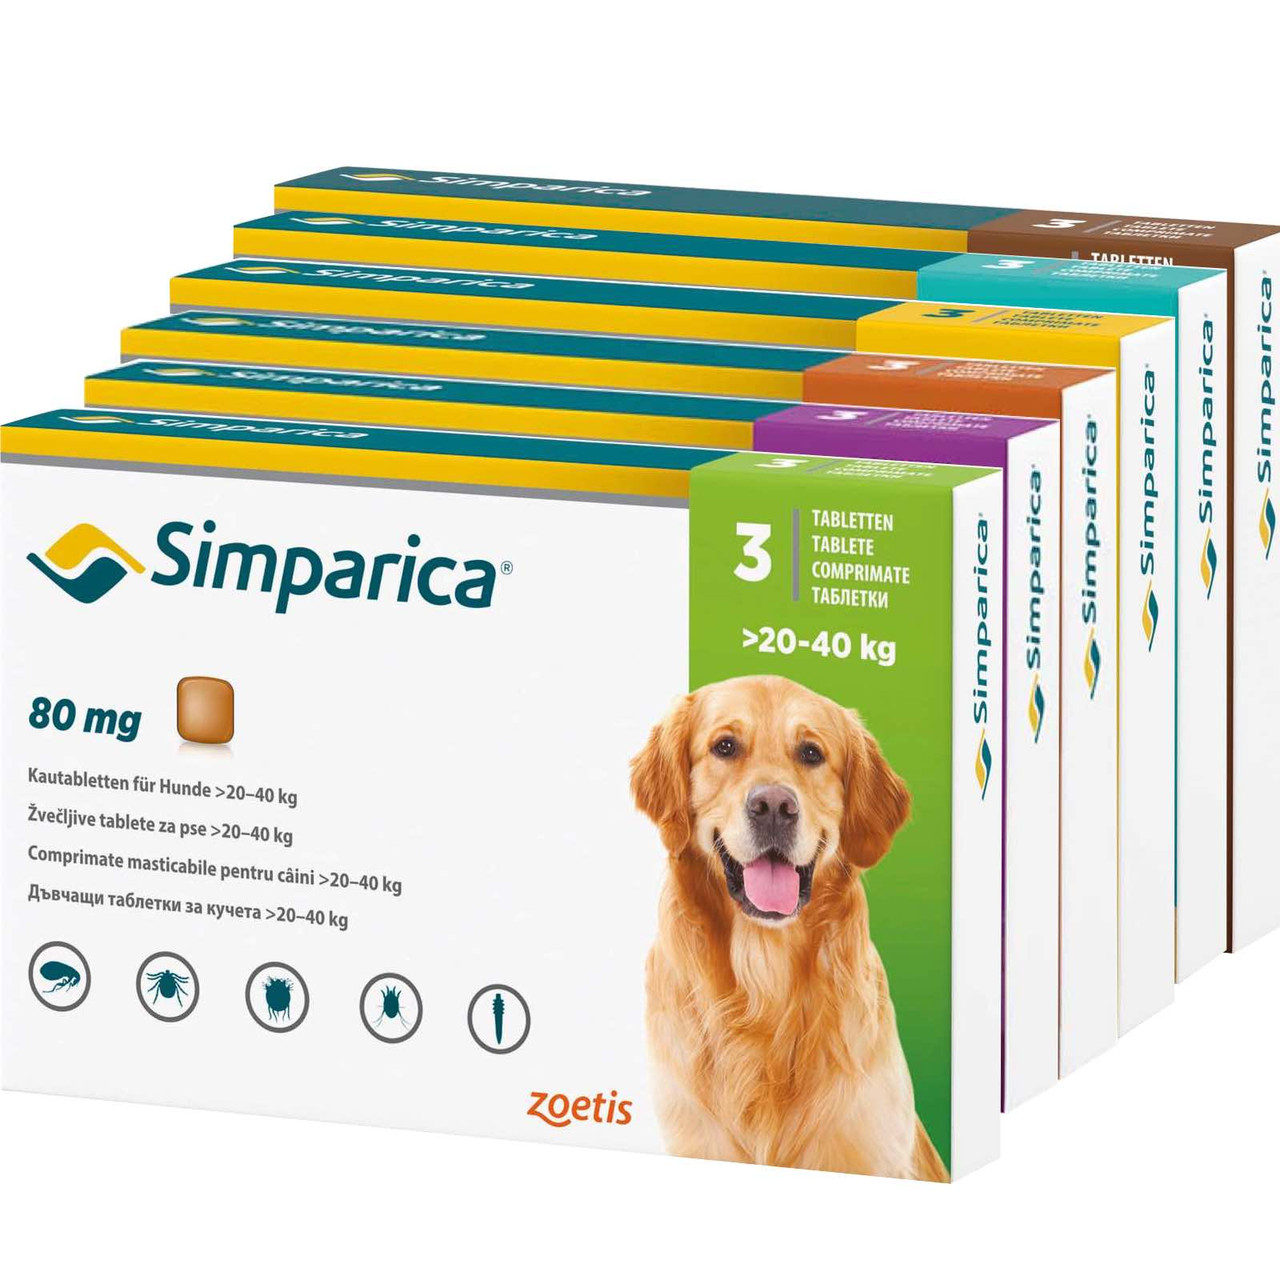 20% rabat på Simparica Loppe- og flåttyggetabletter til hunde hos Atlantic Pet Products